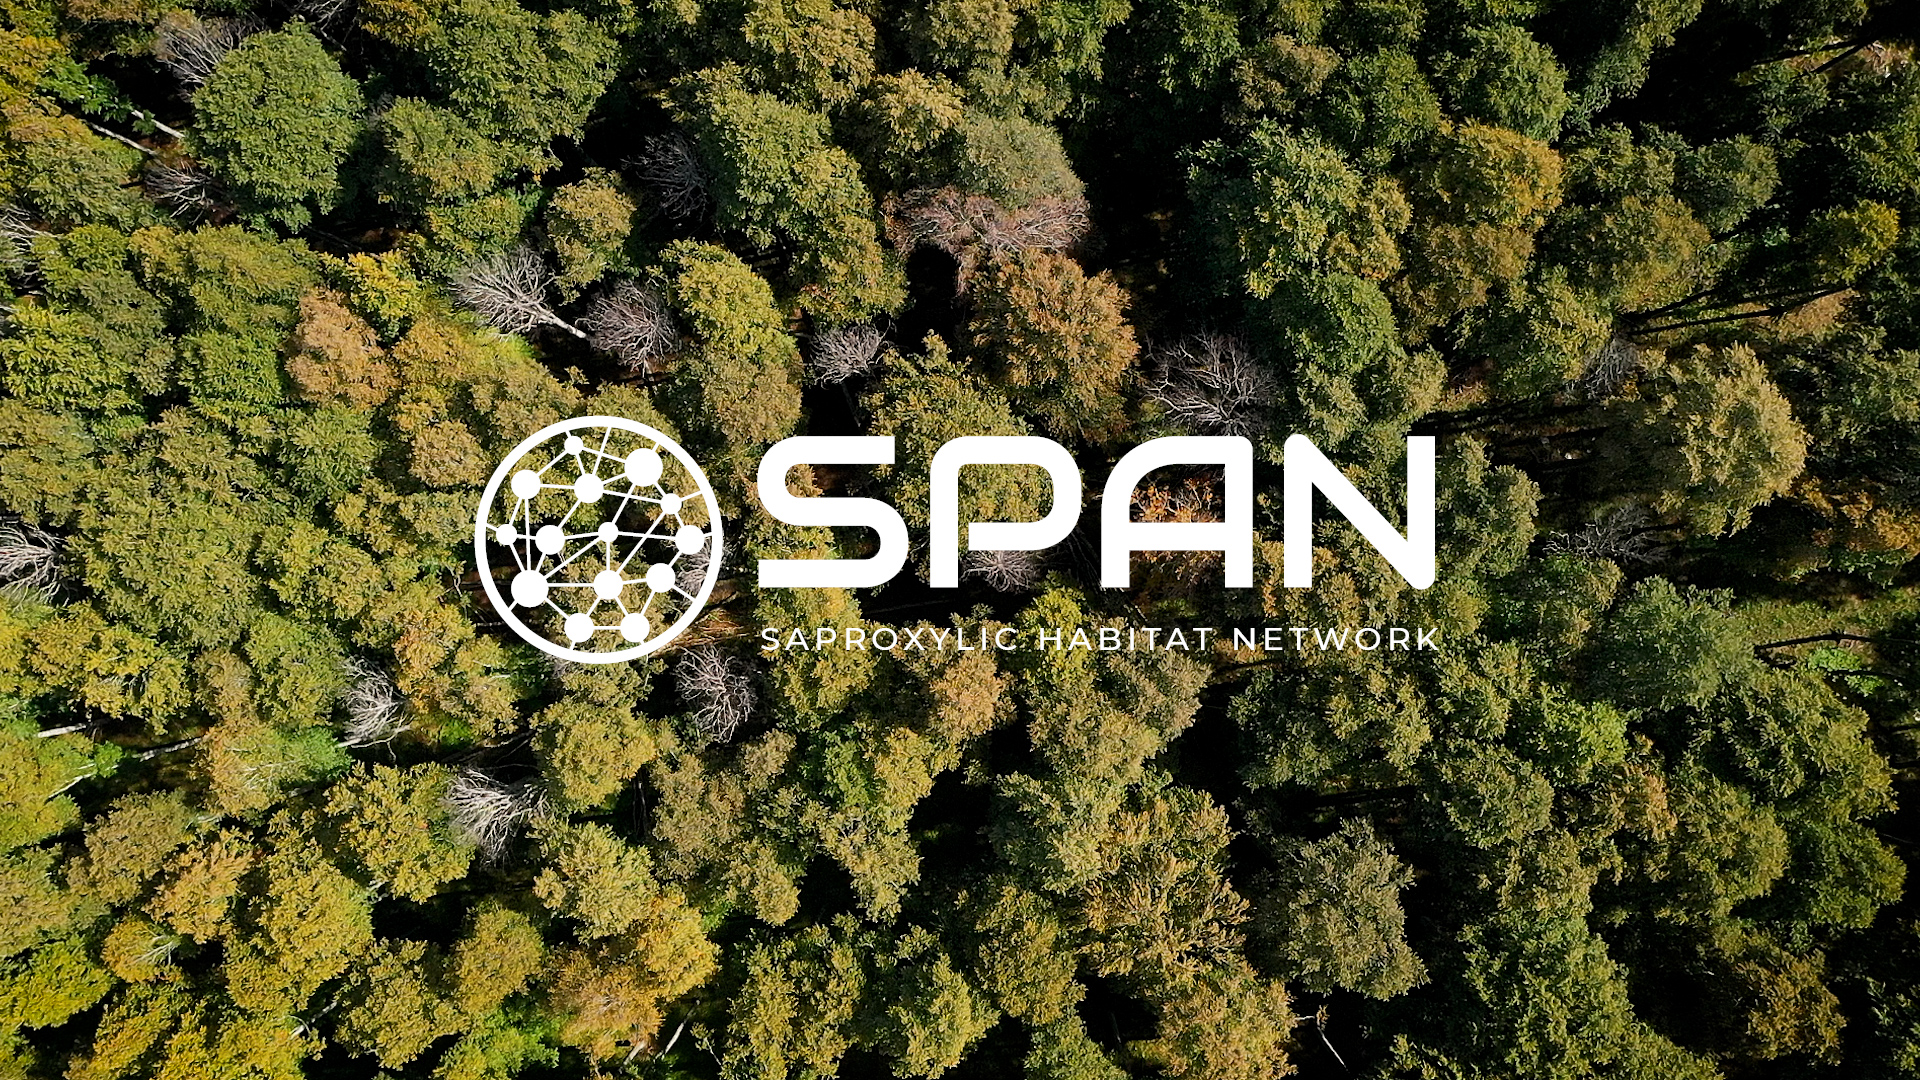 Online il video di lancio del progetto LIFE SPAN